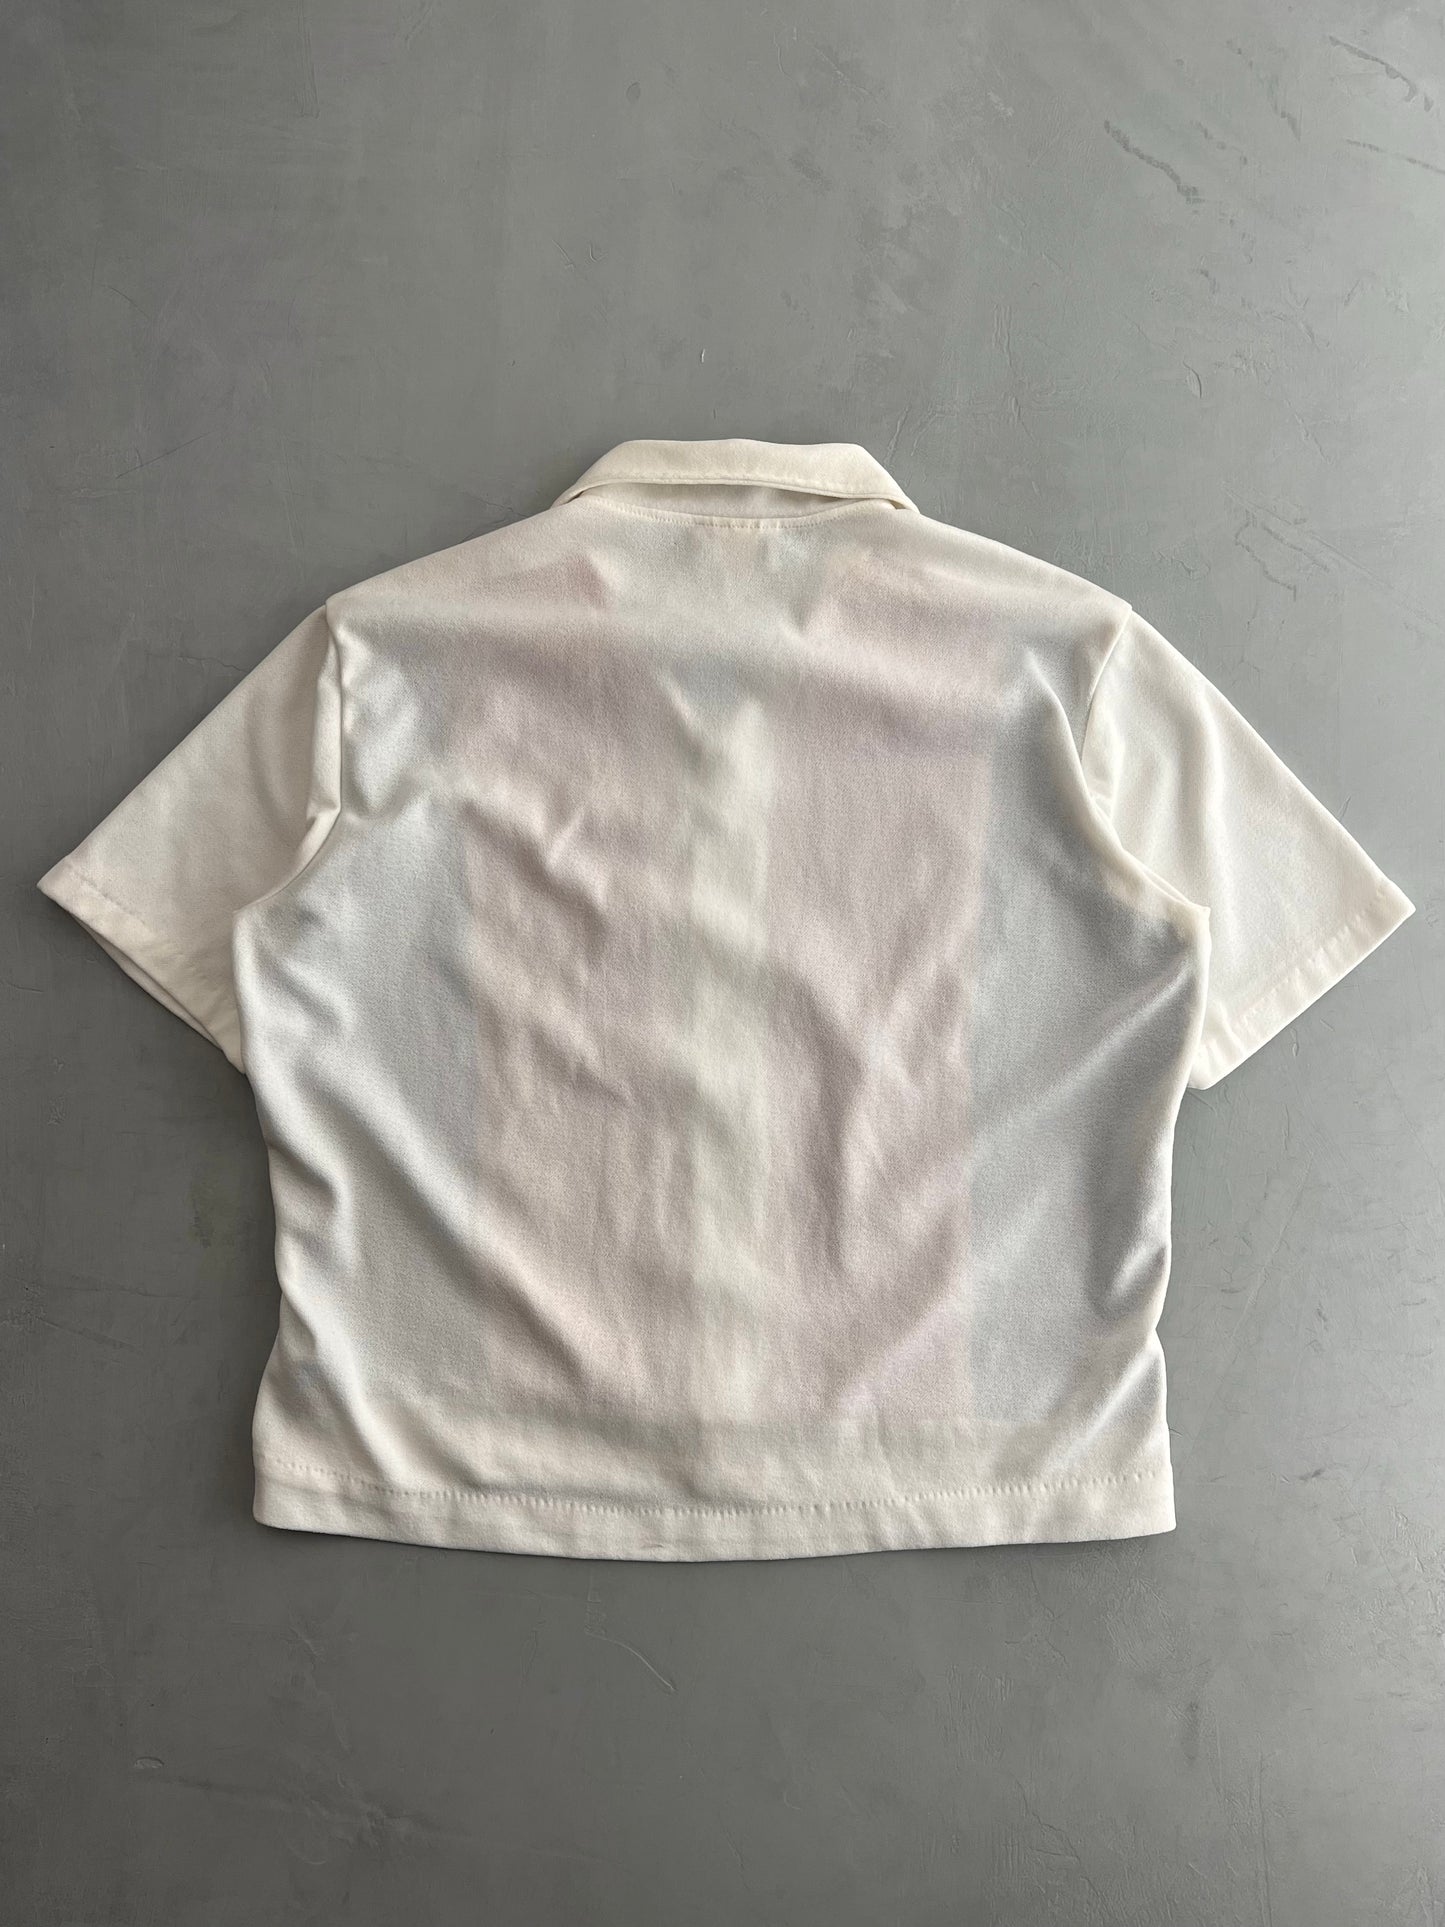 70's Sears Shirt [L]